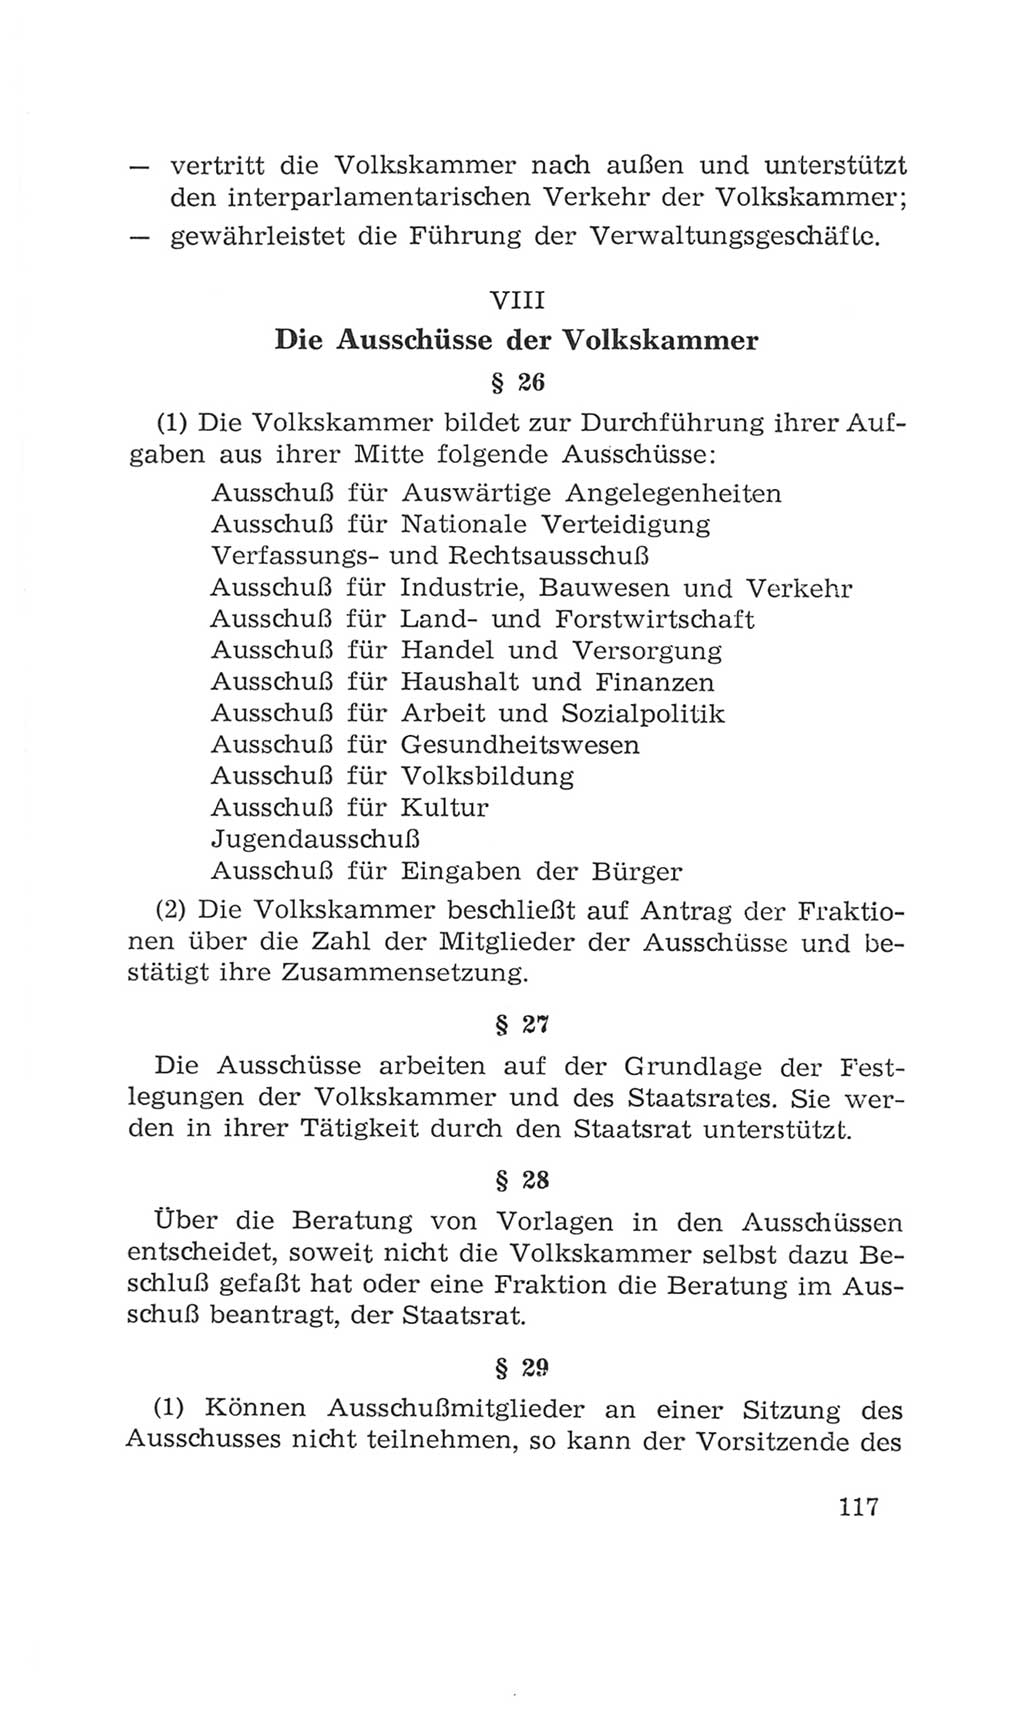 Volkskammer (VK) der Deutschen Demokratischen Republik (DDR), 4. Wahlperiode 1963-1967, Seite 117 (VK. DDR 4. WP. 1963-1967, S. 117)